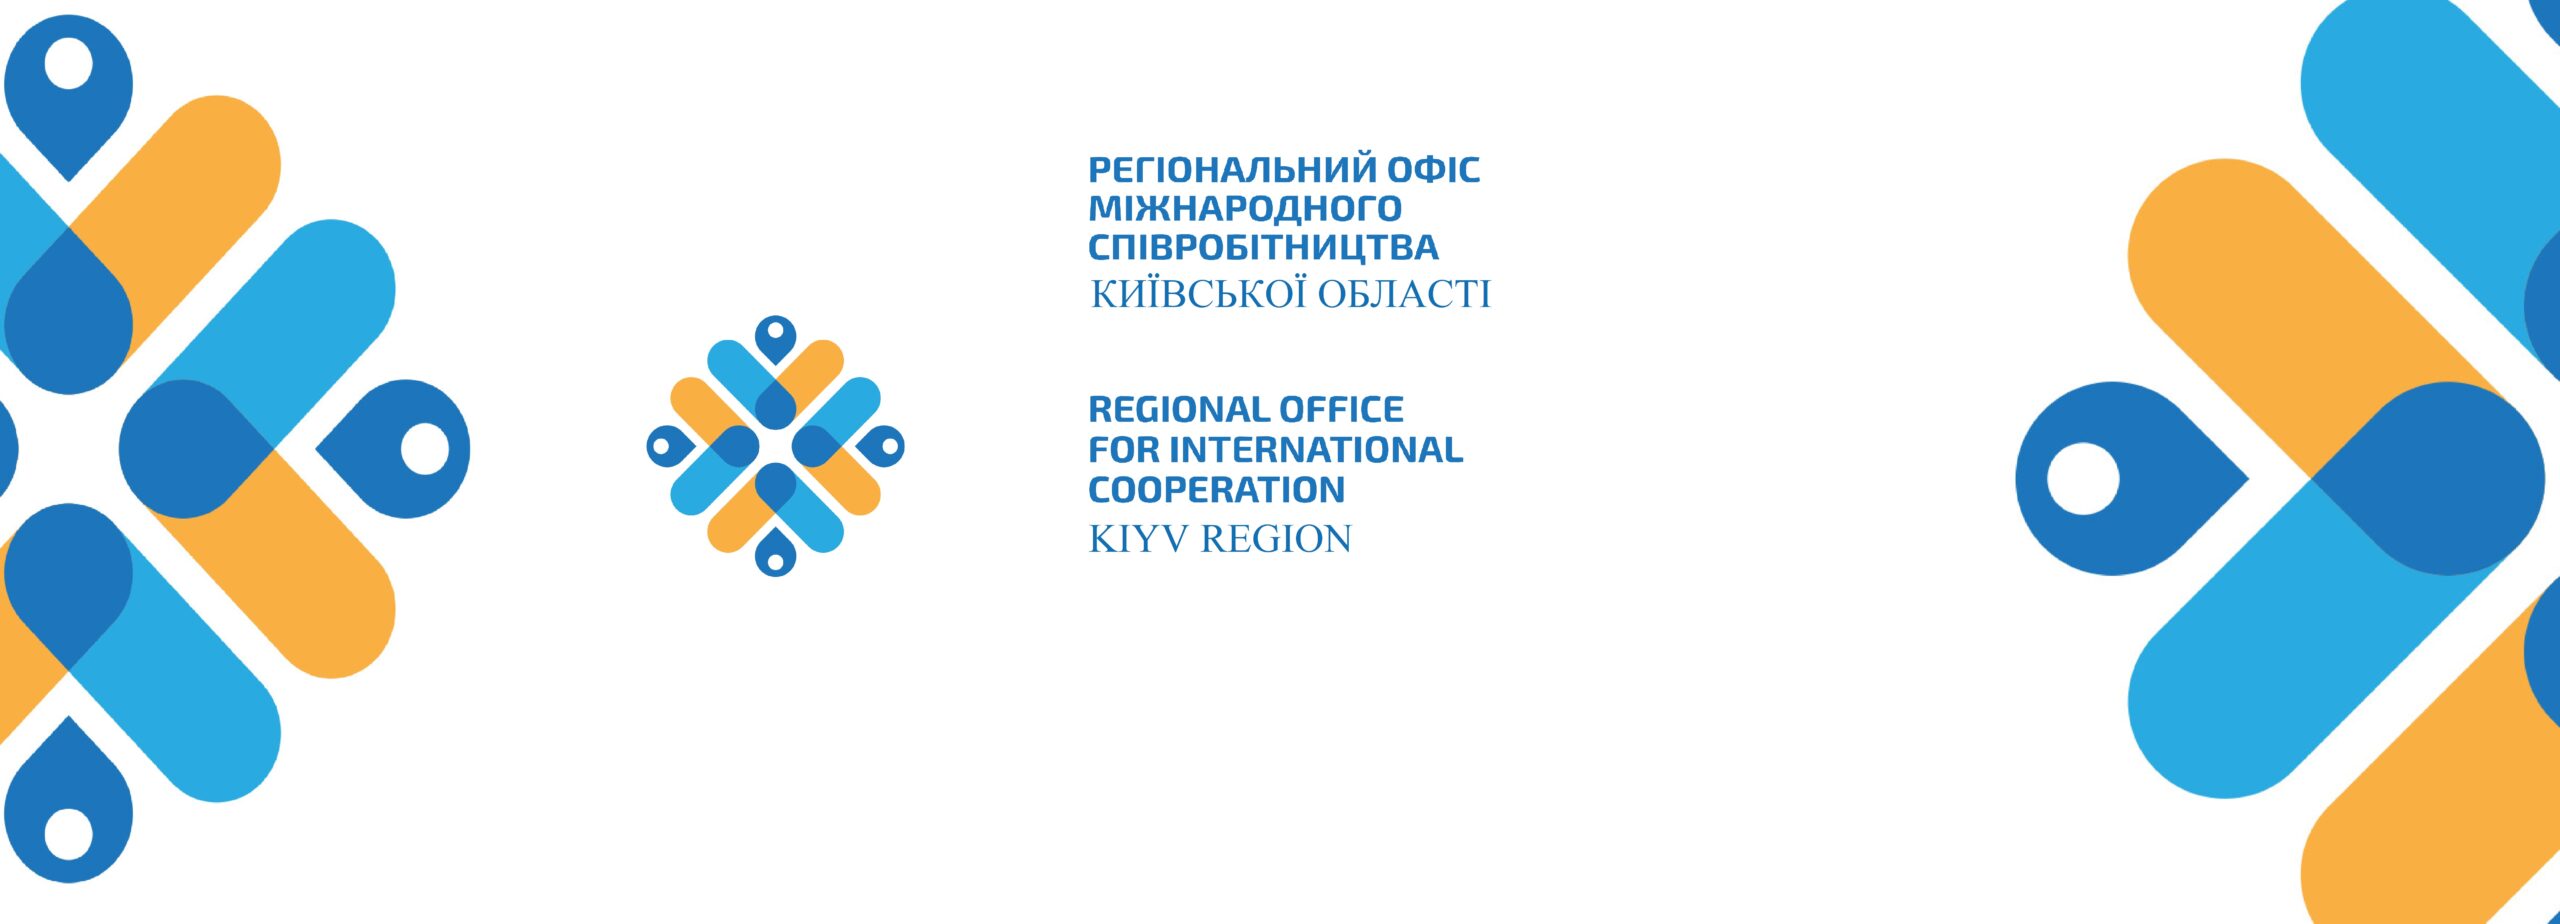 Регіональний офіс міжнародного співробітництва Київської області